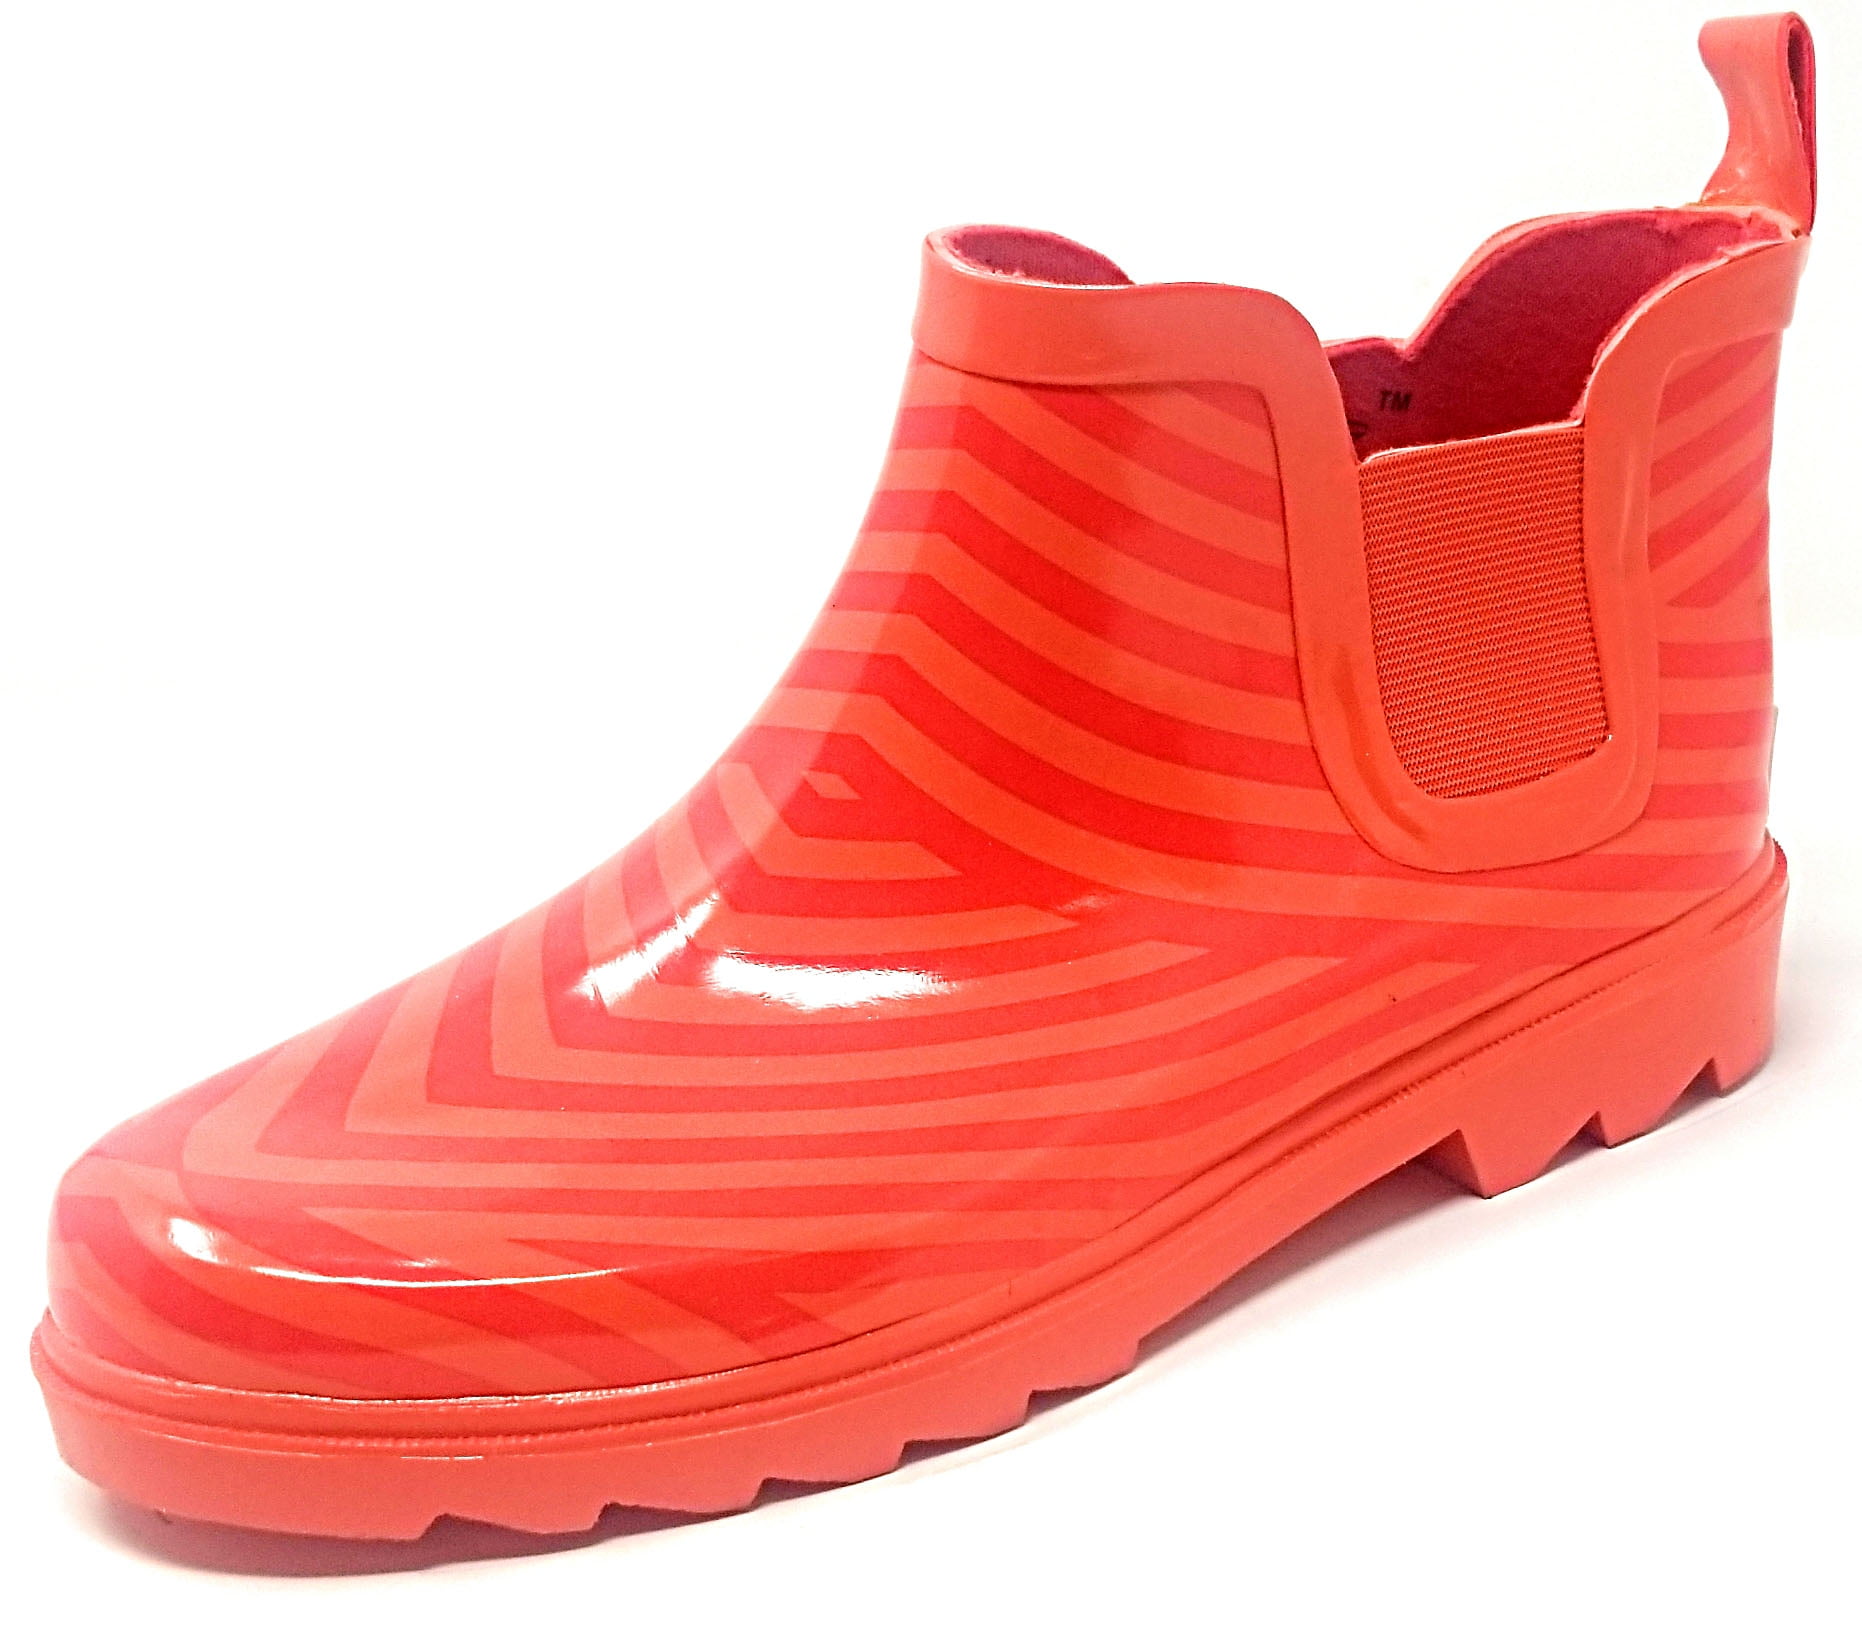 Ladies Bowknot Short Ankle Rain Boots Lightweight Chelsea Rainboots Shoes Outdoor Waterproof Booties Women Booties 